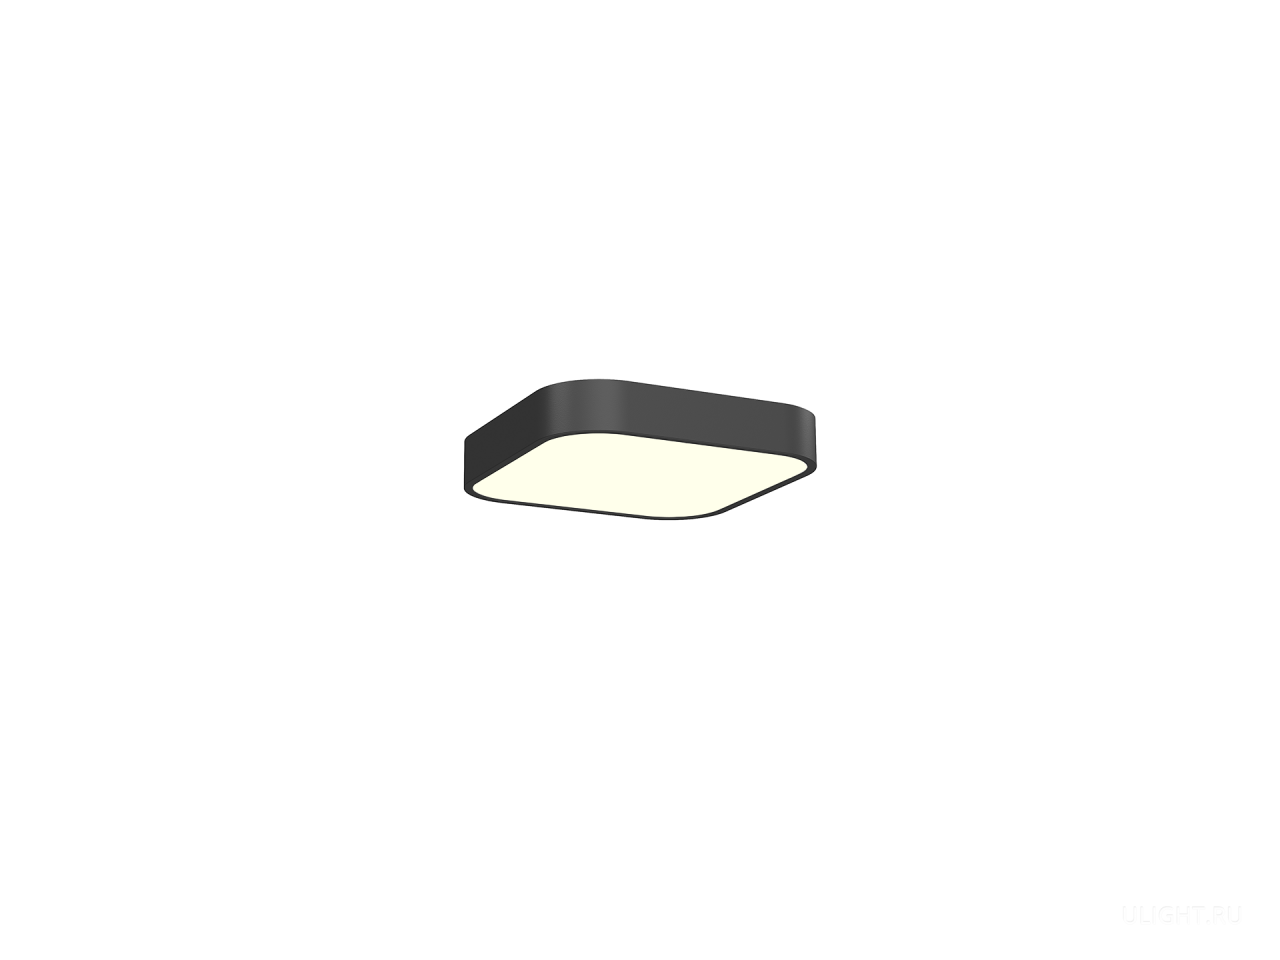 Светильник подвесной HOKASU Square-R B 4K (21W/312x312)